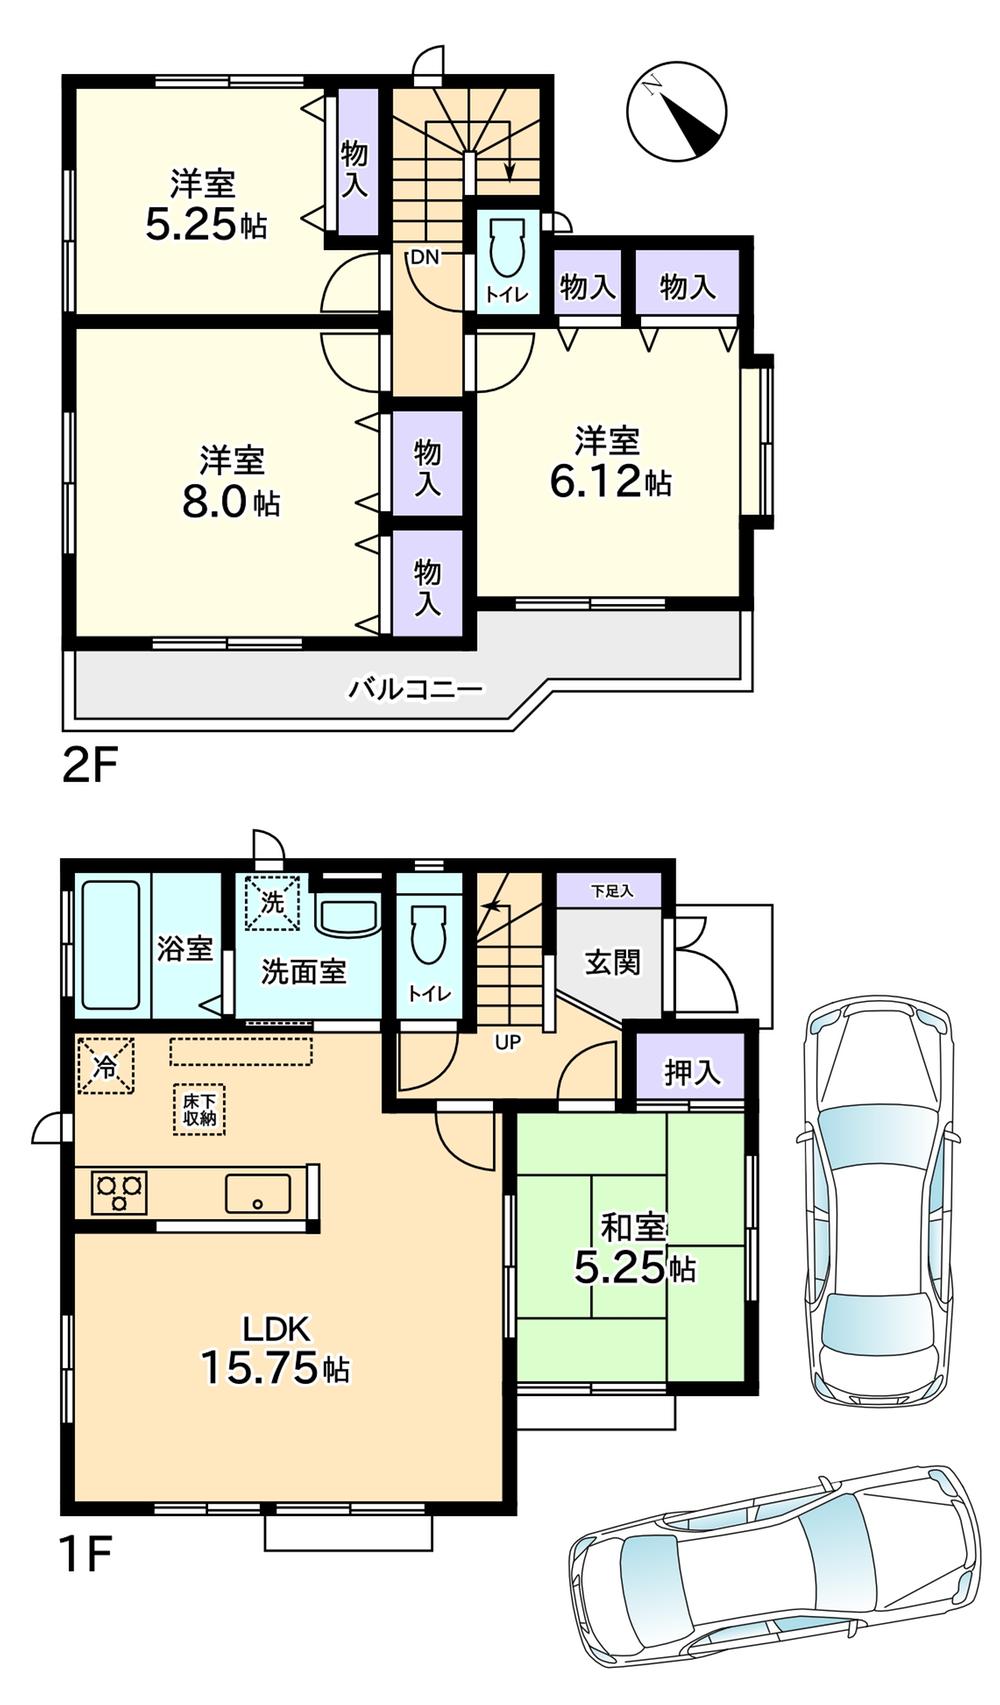 Floor plan. 36,900,000 yen, 4LDK, Land area 146.96 sq m , Building area 94.6 sq m 1 Building: 36,900,000 yen